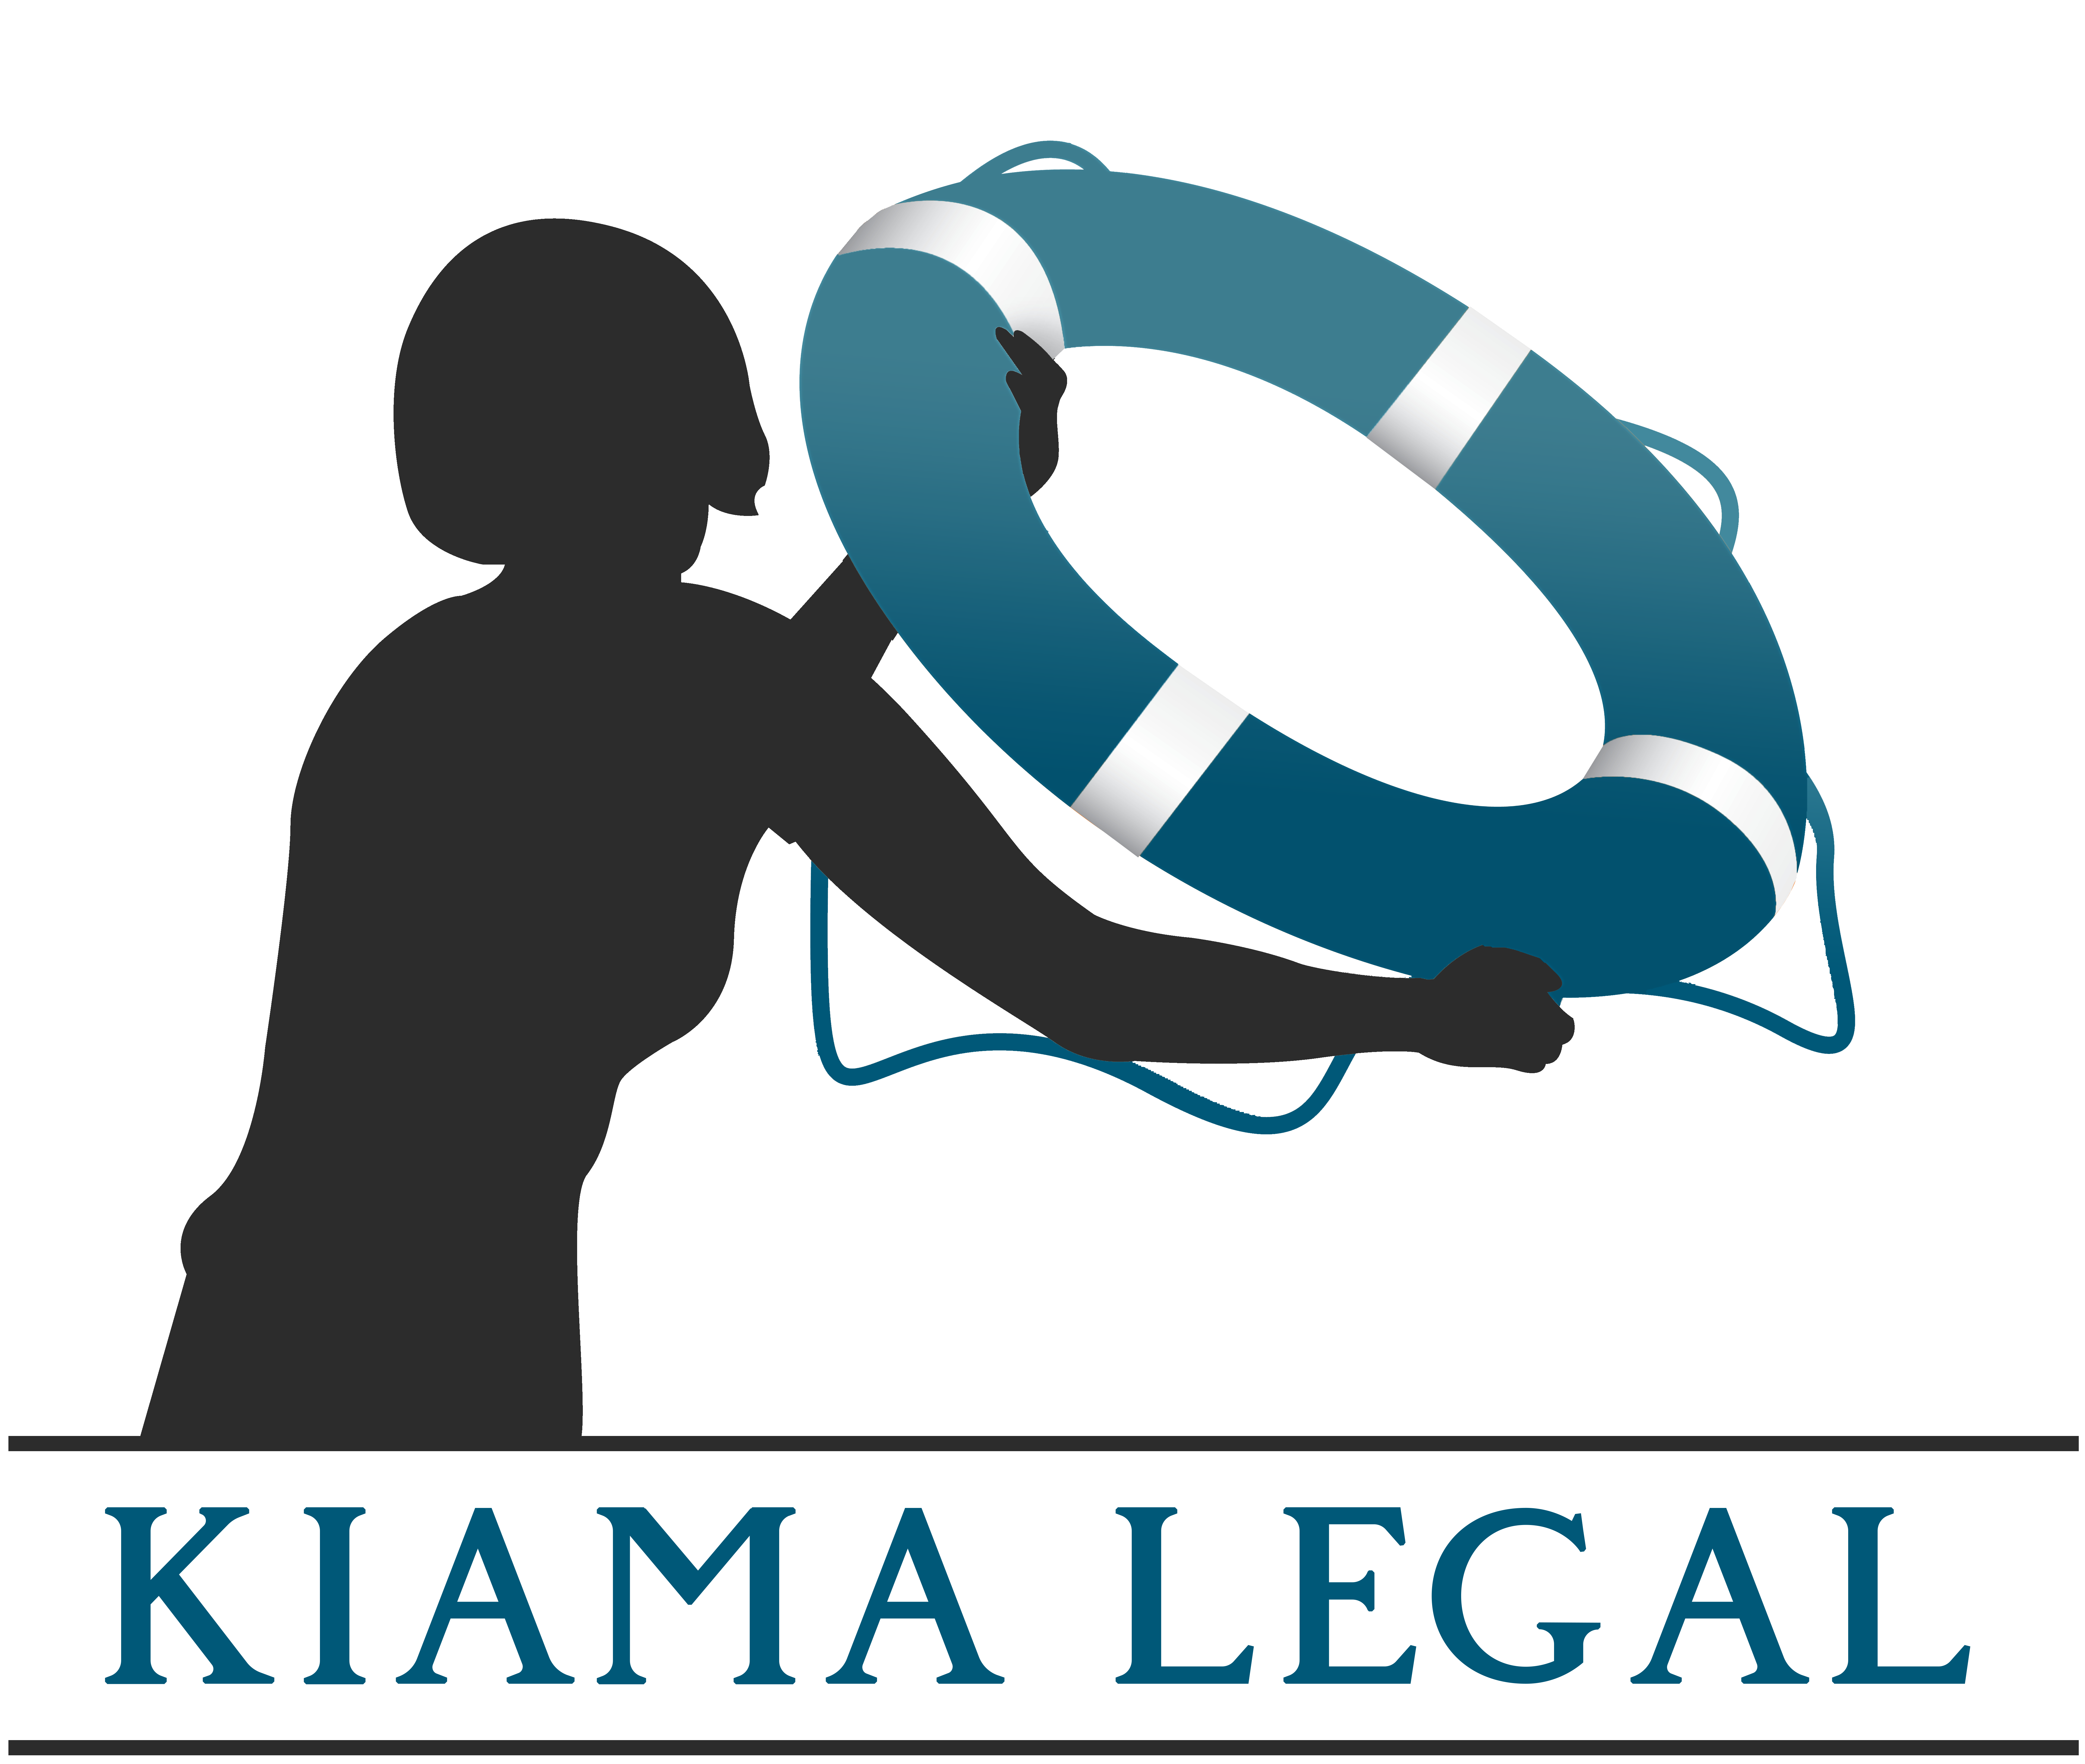 Company logo of Kiama Legal